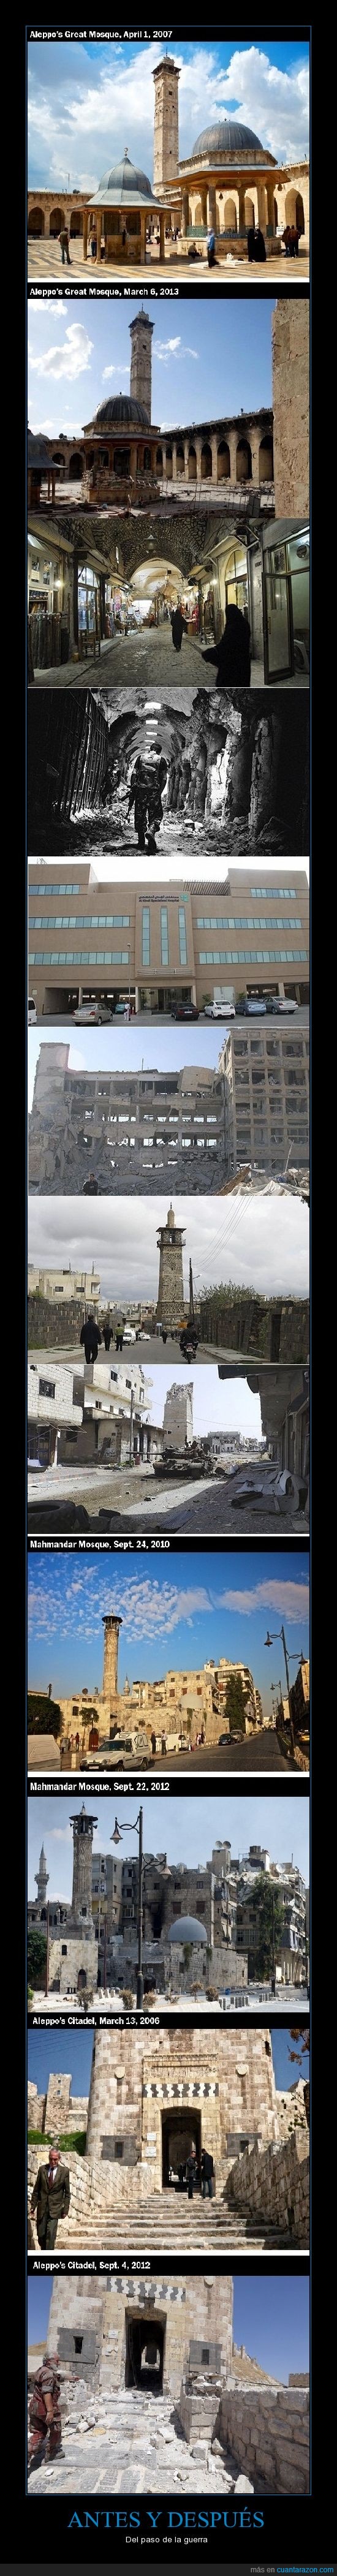 destrozar,guerra,sin sentido,antes y despues,siria,ruina,mesquita,bombardeos